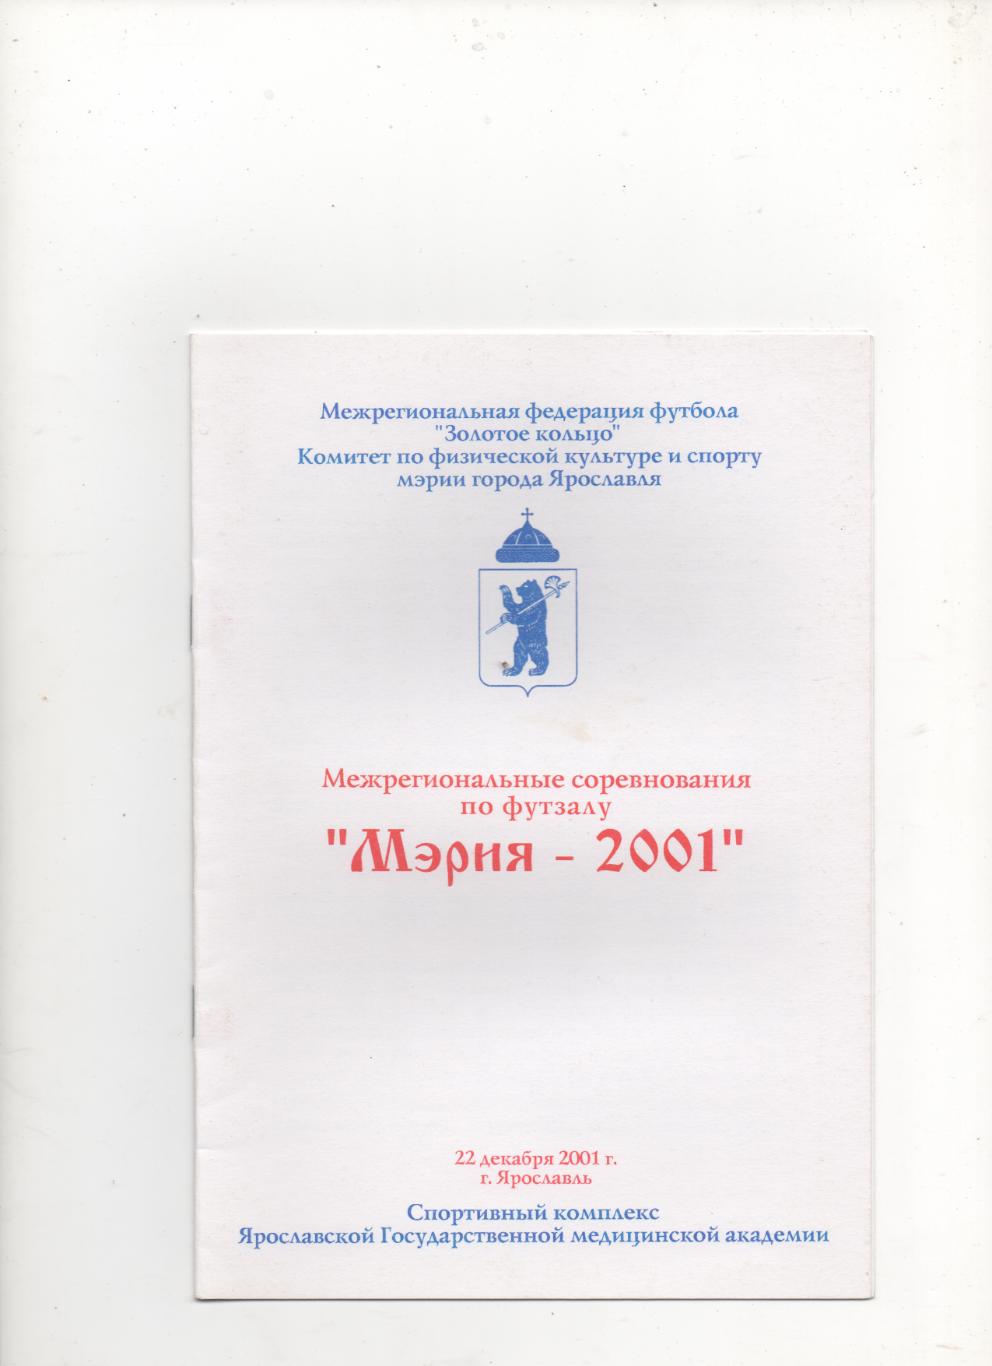 Межрегиональные соревнования по футзалу. Мэрия - 2001. Ярославль.